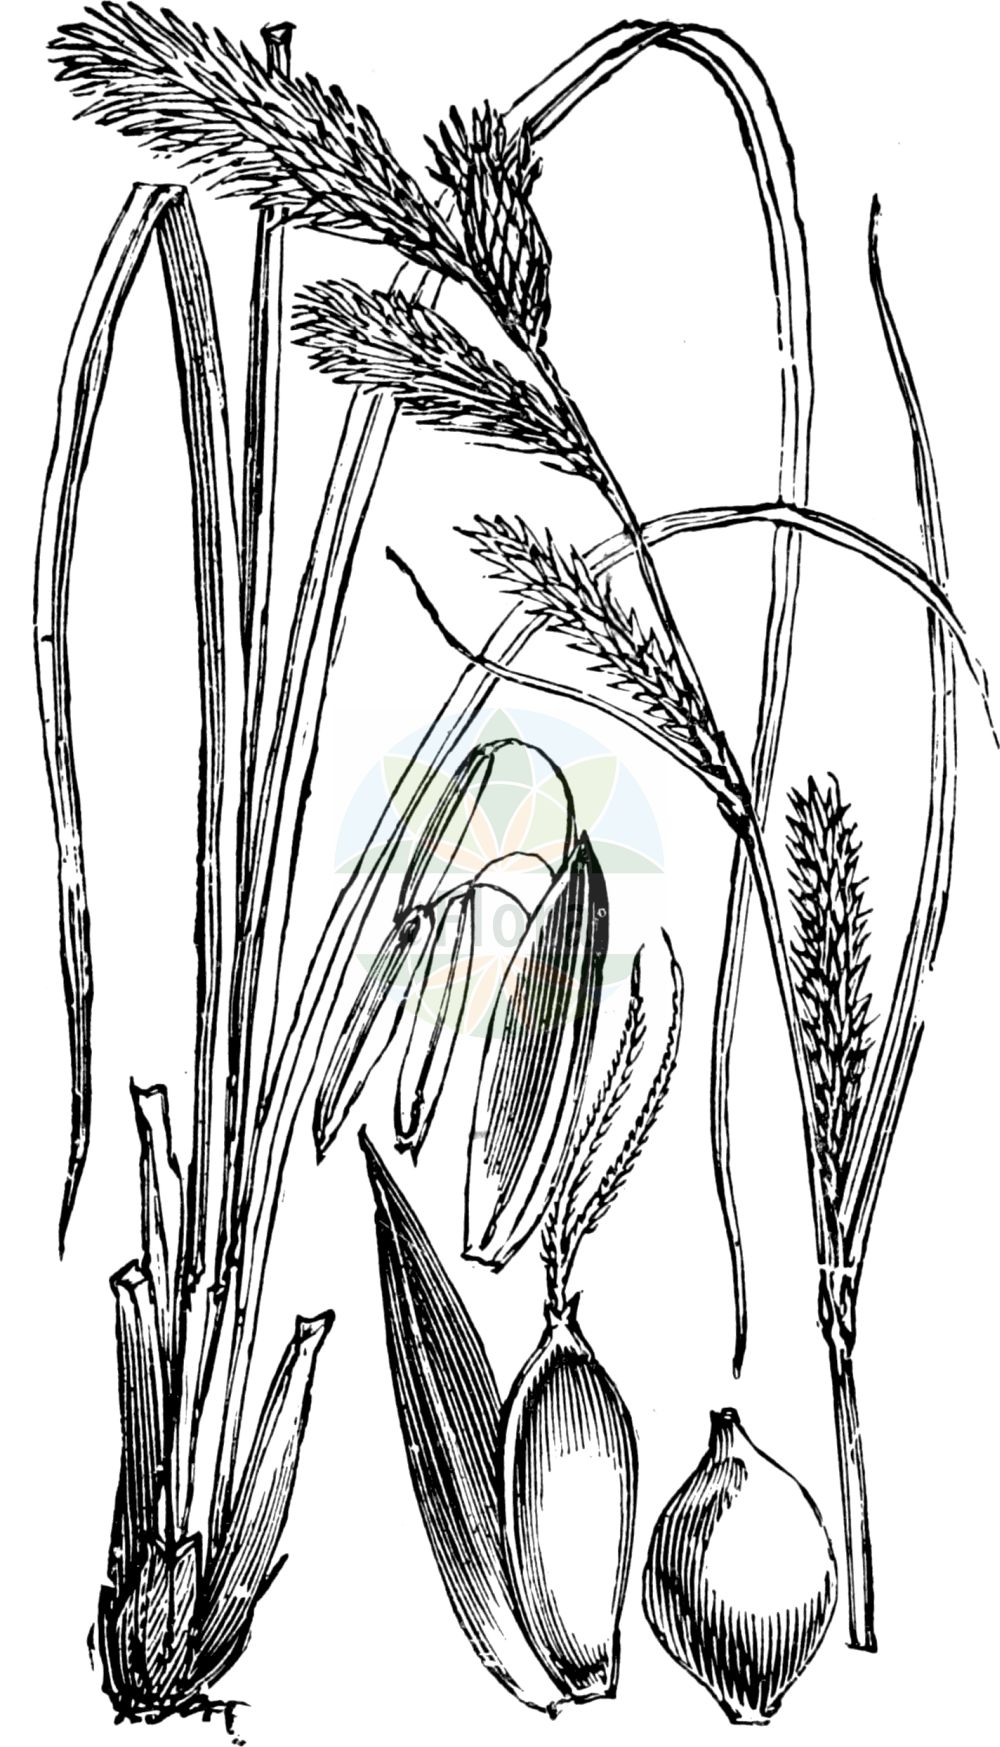 Historische Abbildung von Carex acuta (Kanten-Segge - Slender Tufted-Sedge). Das Bild zeigt Blatt, Bluete, Frucht und Same. ---- Historical Drawing of Carex acuta (Kanten-Segge - Slender Tufted-Sedge). The image is showing leaf, flower, fruit and seed.(Carex acuta,Kanten-Segge,Slender Tufted-Sedge,Carex acuta,Carex ambigua,Carex dichroandra,Carex fuscovaginata,Carex graciliformis,Carex gracilis,Carex sareptana,Carex tricostata,Kanten-Segge,Schlank-Segge,Schlanke Segge,Spitz-Segge,Zierliche Segge,Slender Tufted-Sedge,Acute Sedge,Carex,Segge,Sedge,Cyperaceae,Sauergräser,Sedge family,Blatt,Bluete,Frucht,Same,leaf,flower,fruit,seed,Fitch et al. (1880))